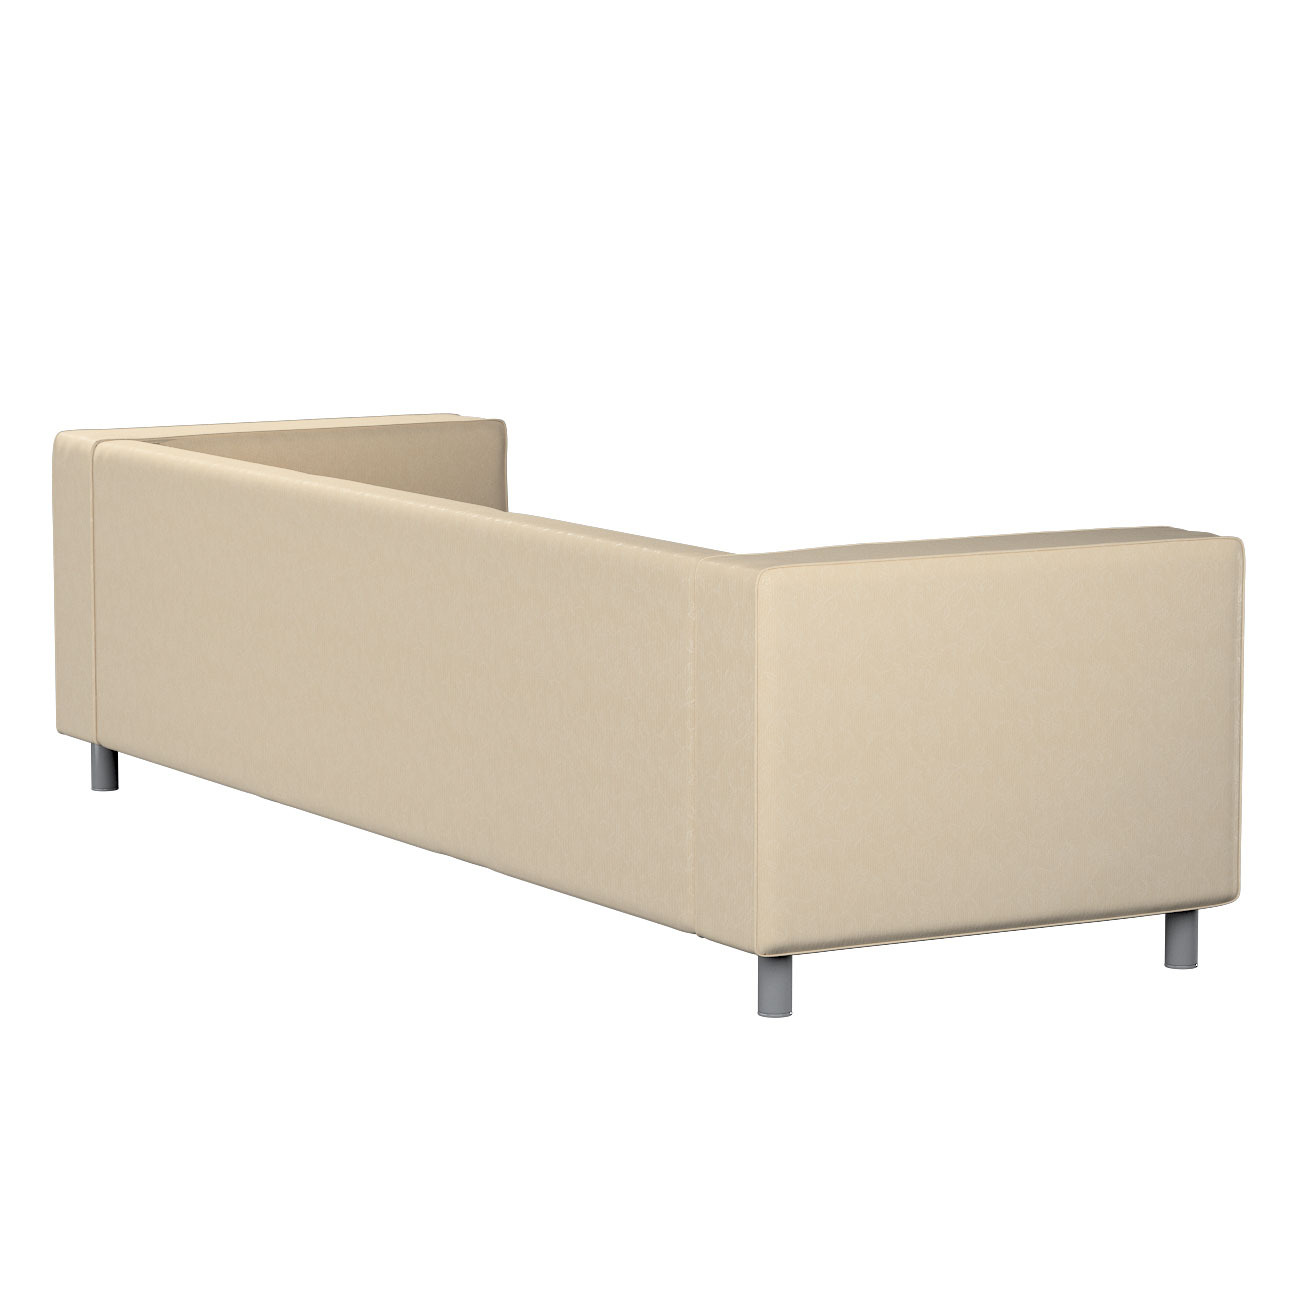 Bezug für Klippan 4-Sitzer Sofa, ecru, Bezug für Klippan 4-Sitzer, Living ( günstig online kaufen